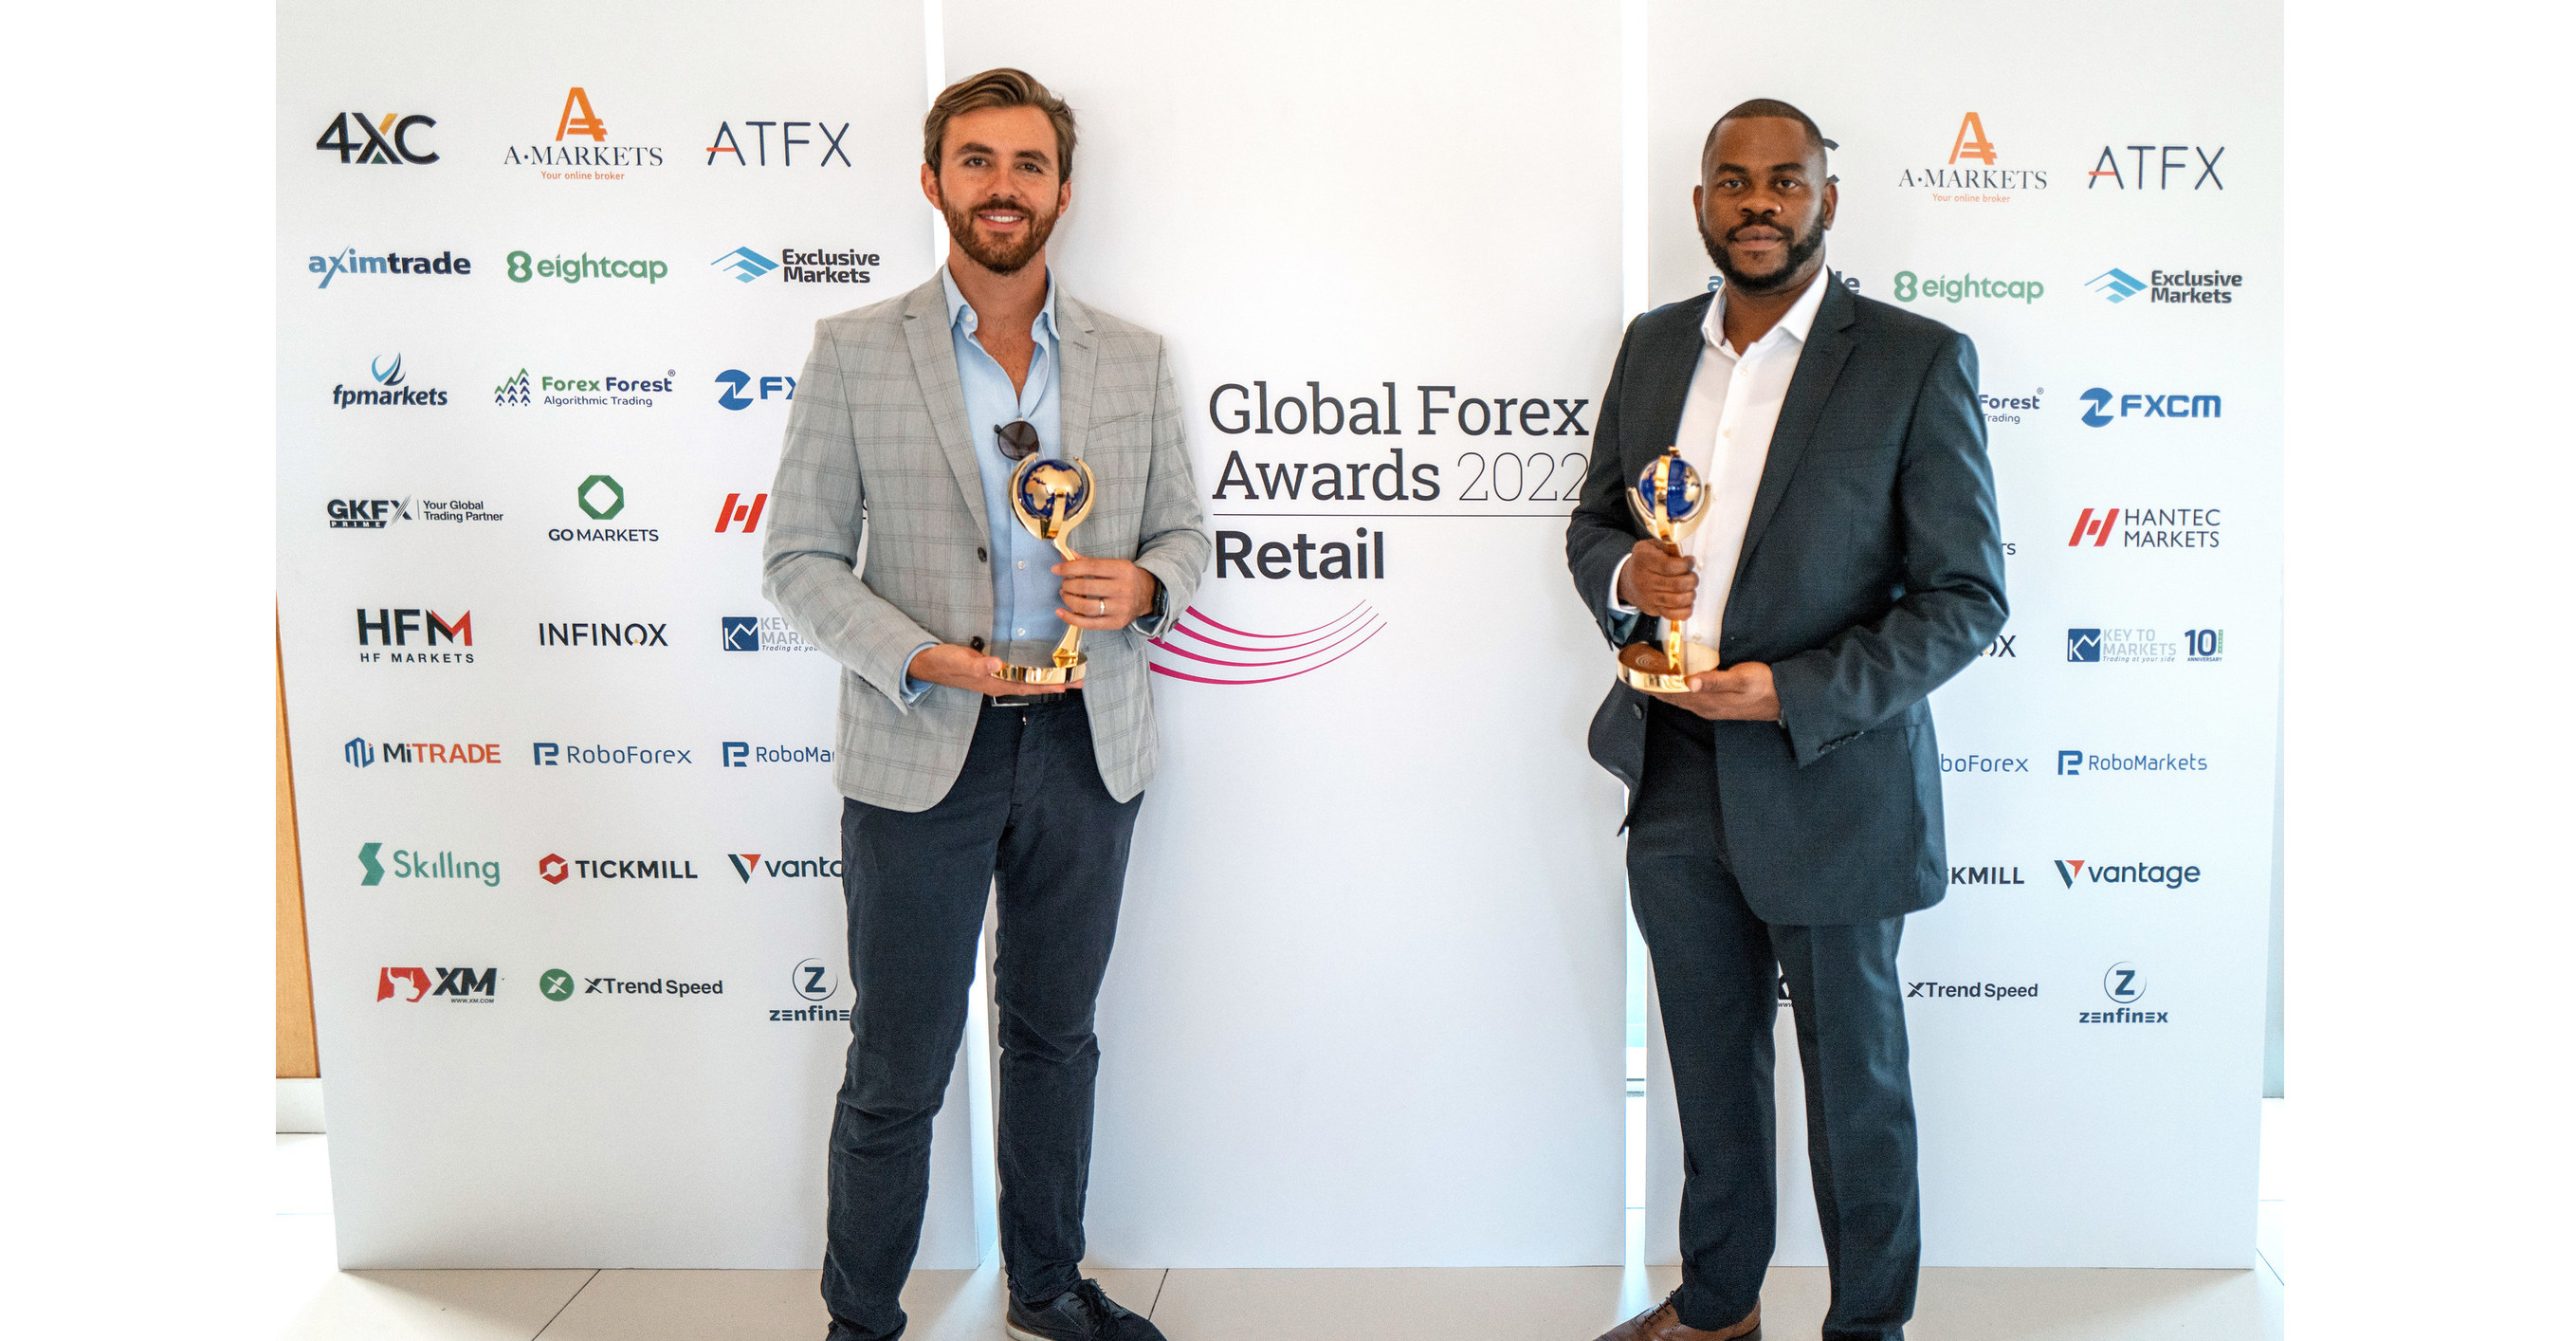 Vantage wins three awards at the Global Forex Awards 2022